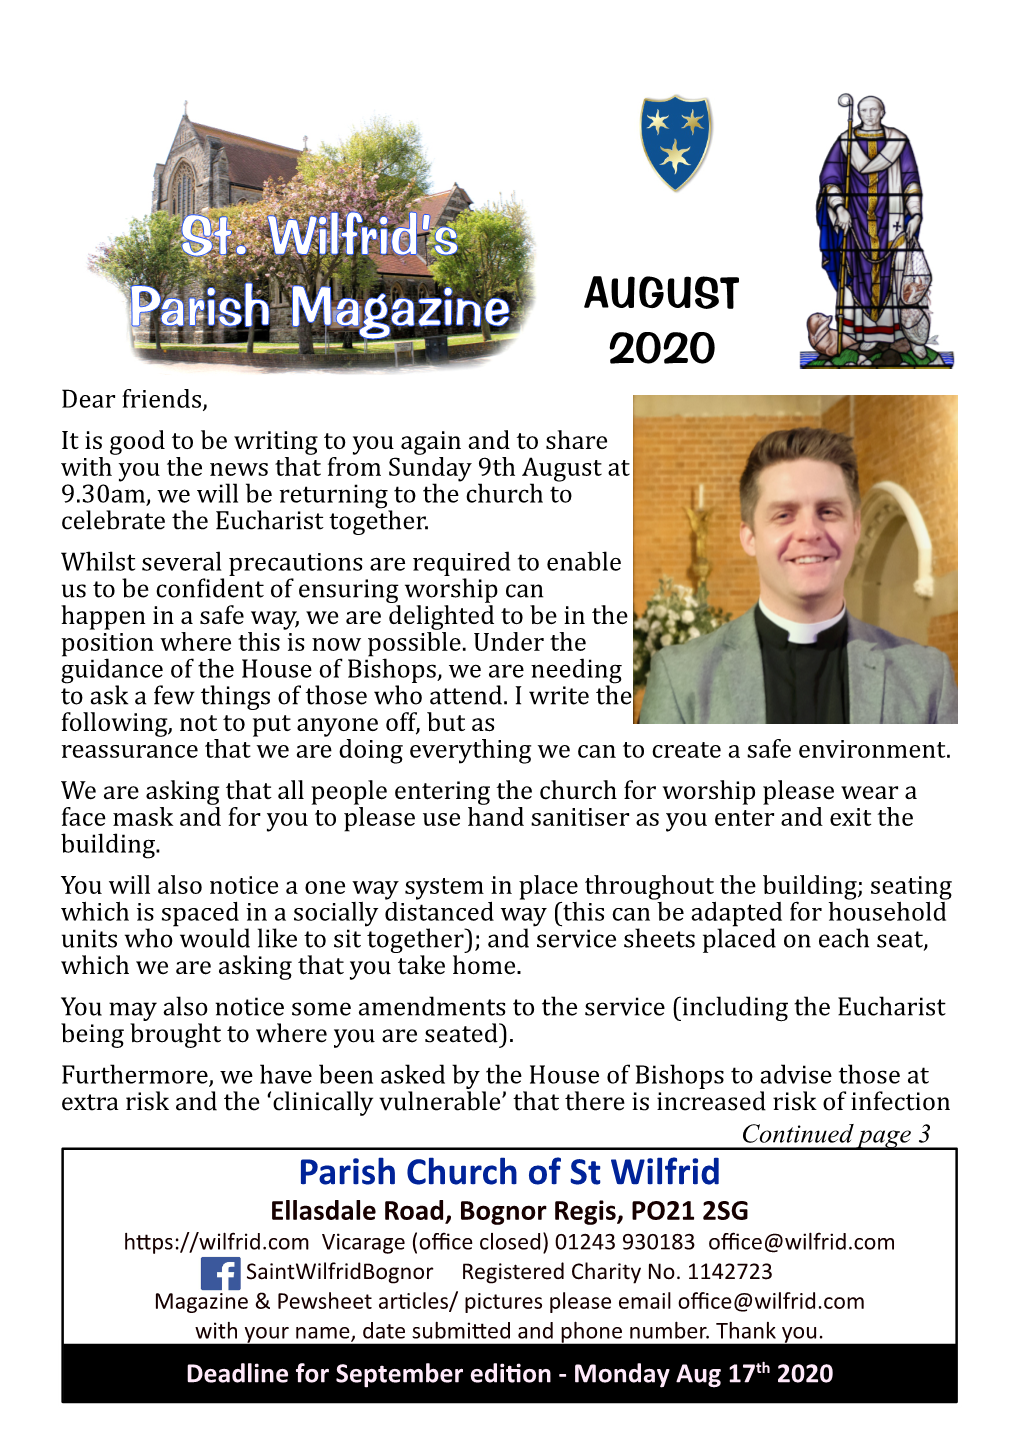 St. Wilfrid's Parish Magazine